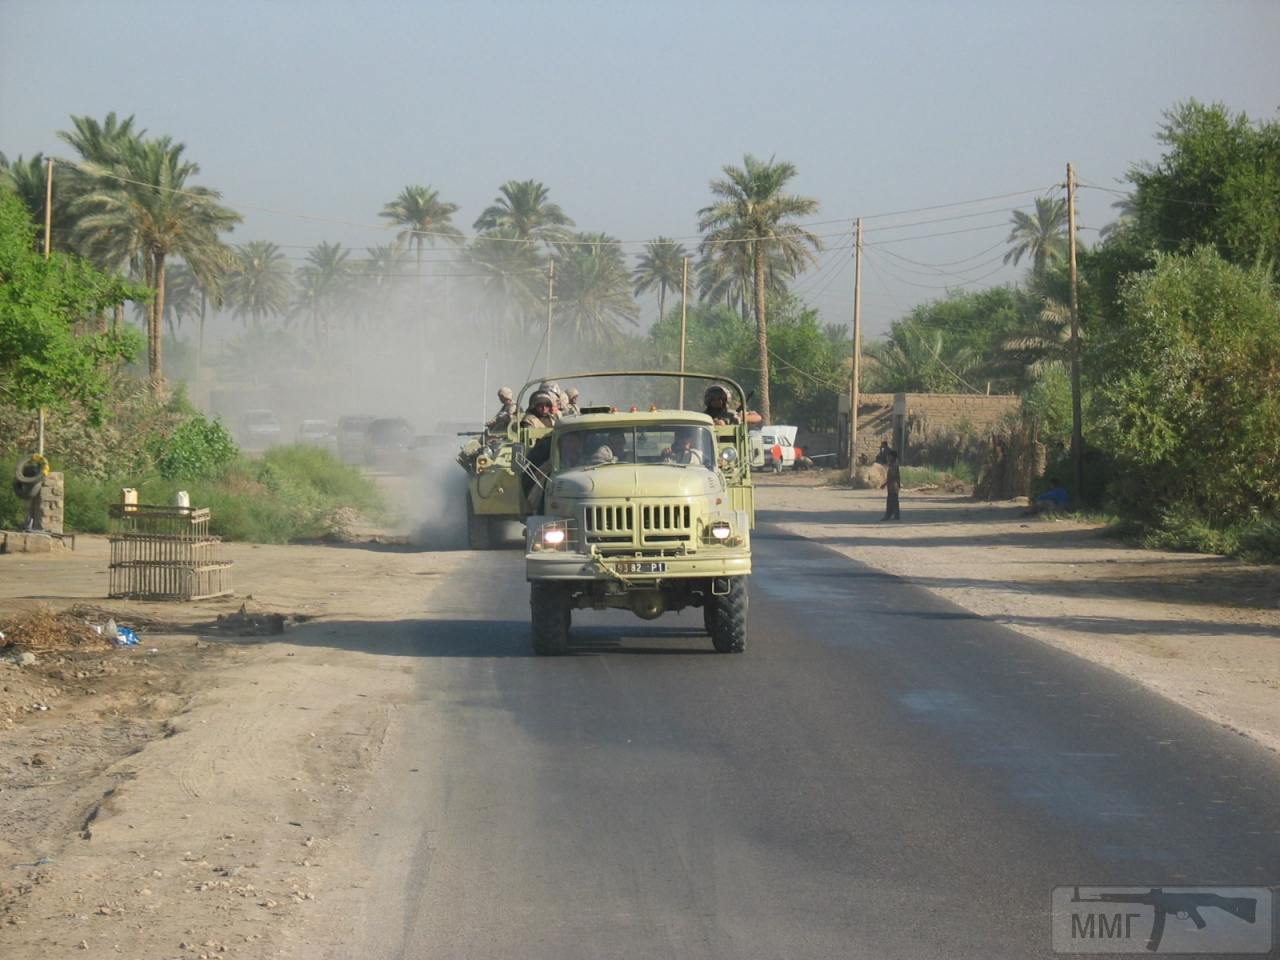 31430 - Участие ВСУ в миротворческой миссии в Ираке 2003-2008г.г.